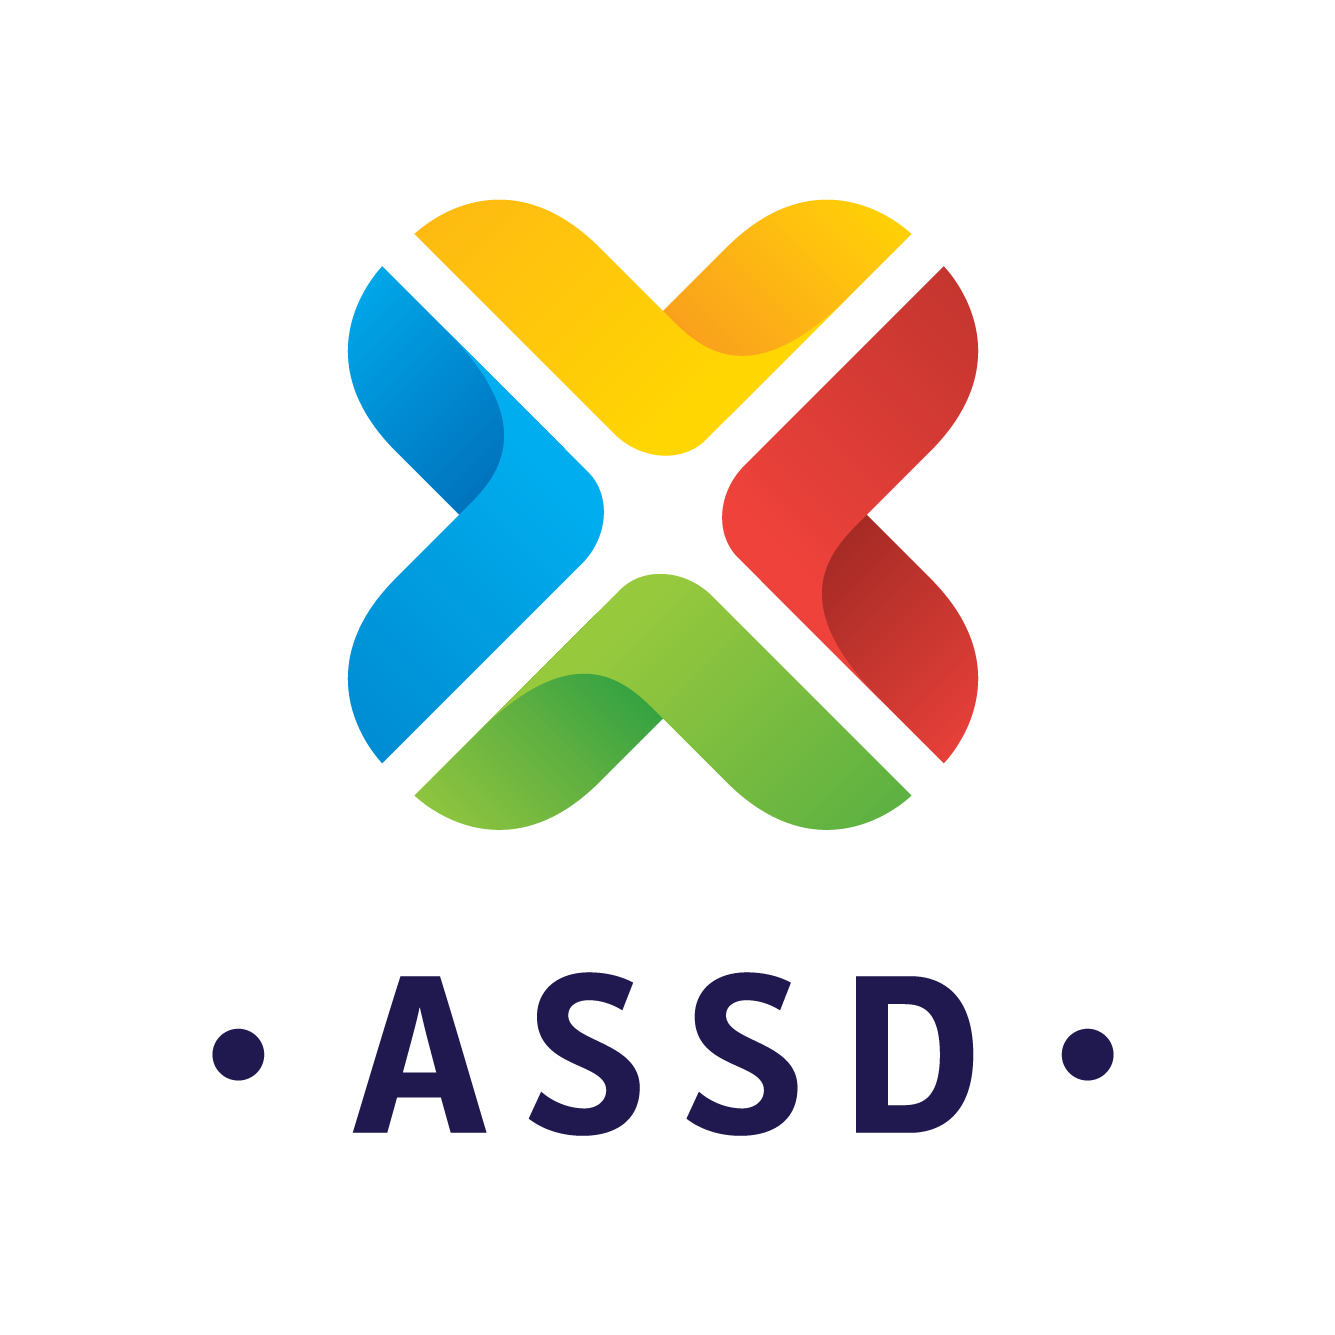 ASSD-06 2019 transparente